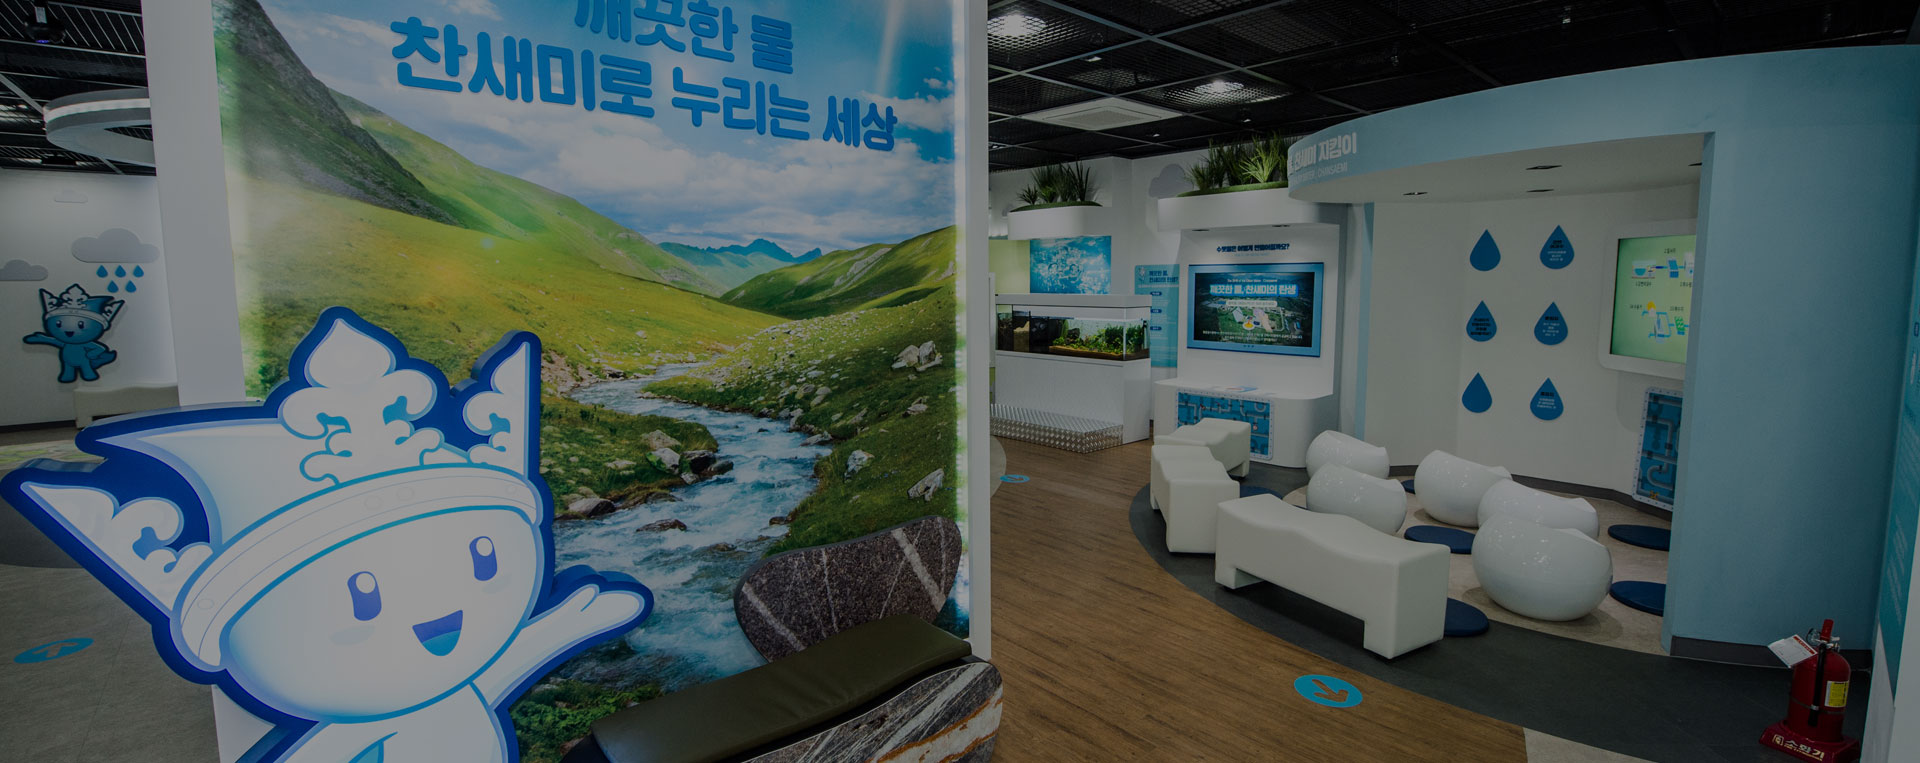 생명의 근원인 깨끗한 물을 공급하는 상수도의 역사를 기록하는 공간, 김해시 수도박물관